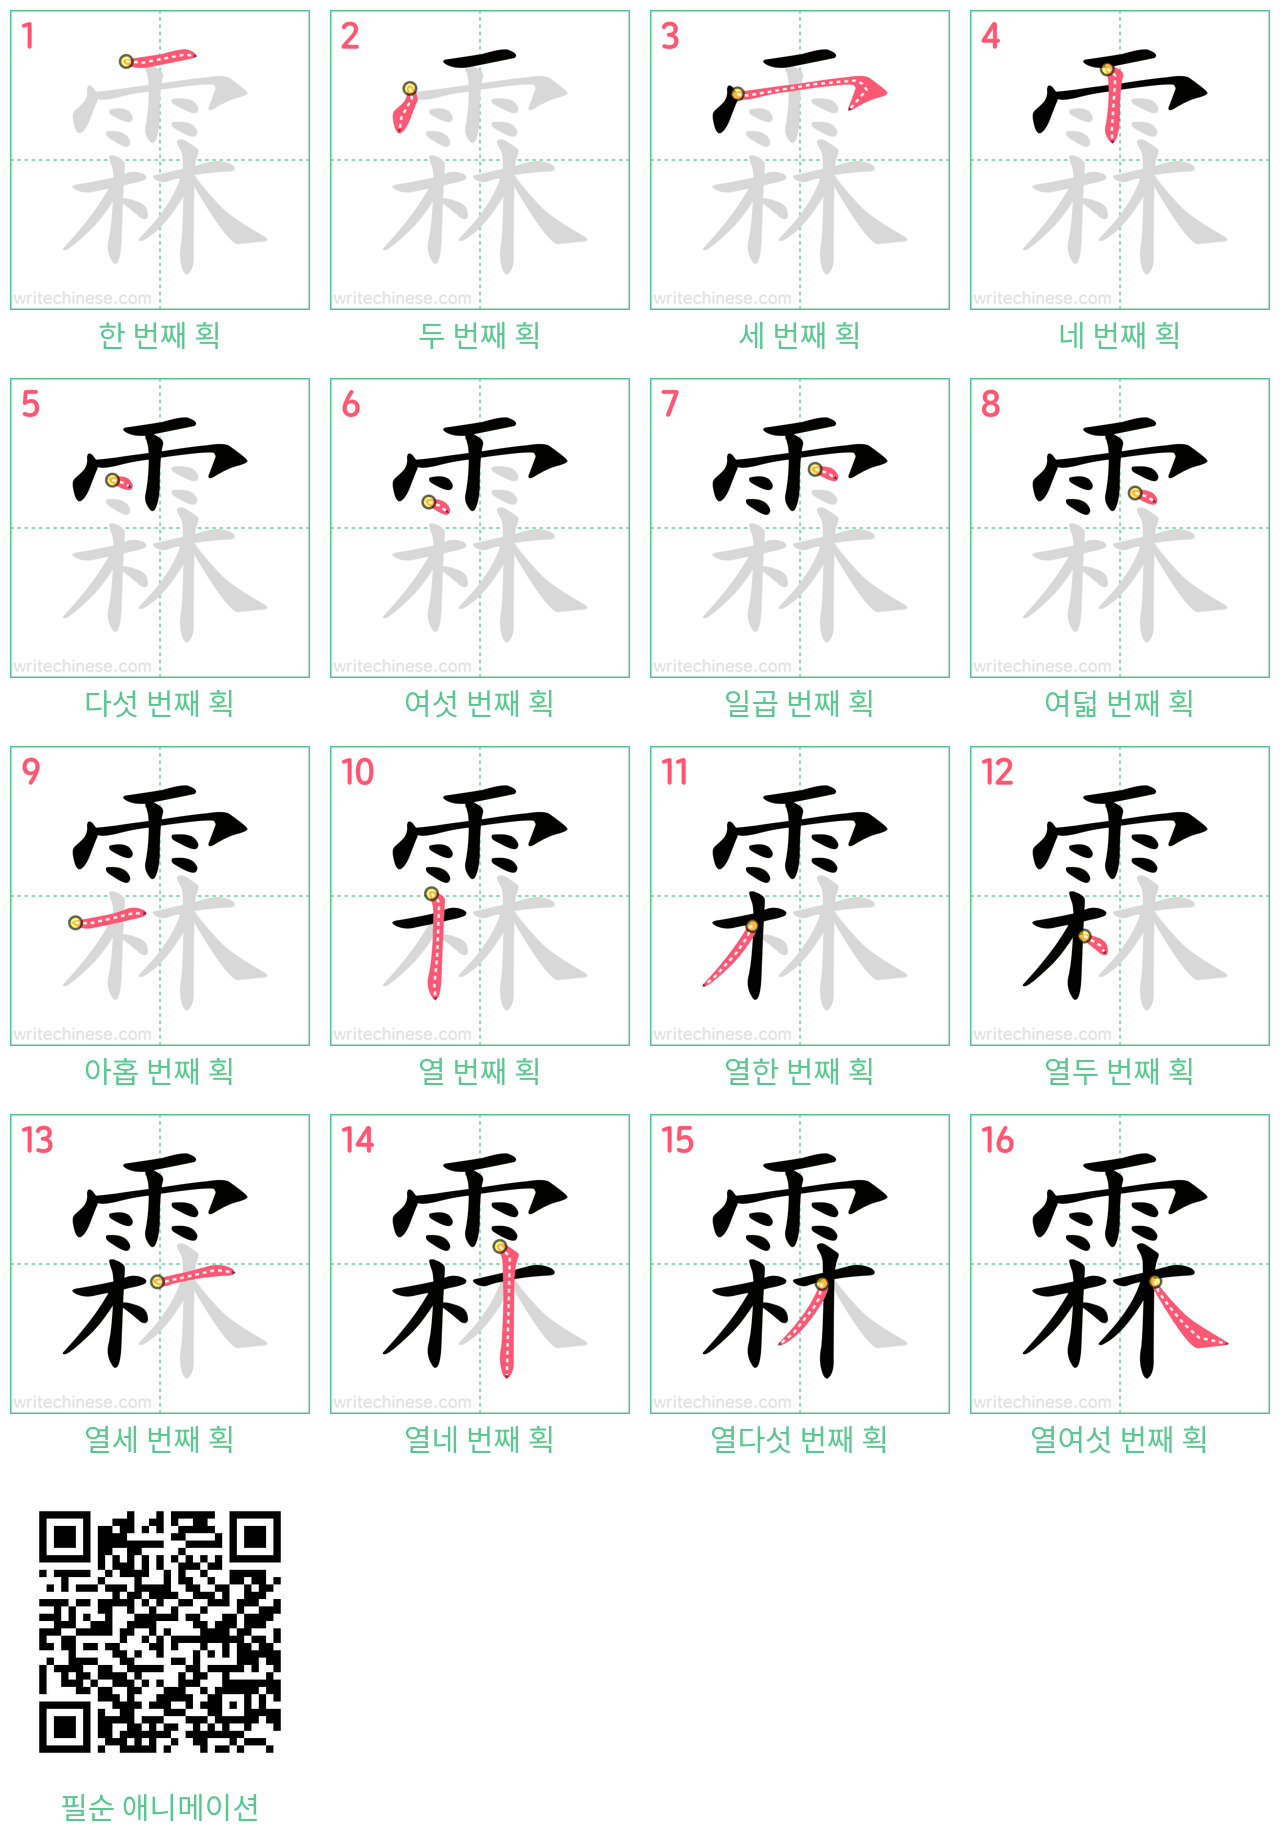 霖 step-by-step stroke order diagrams